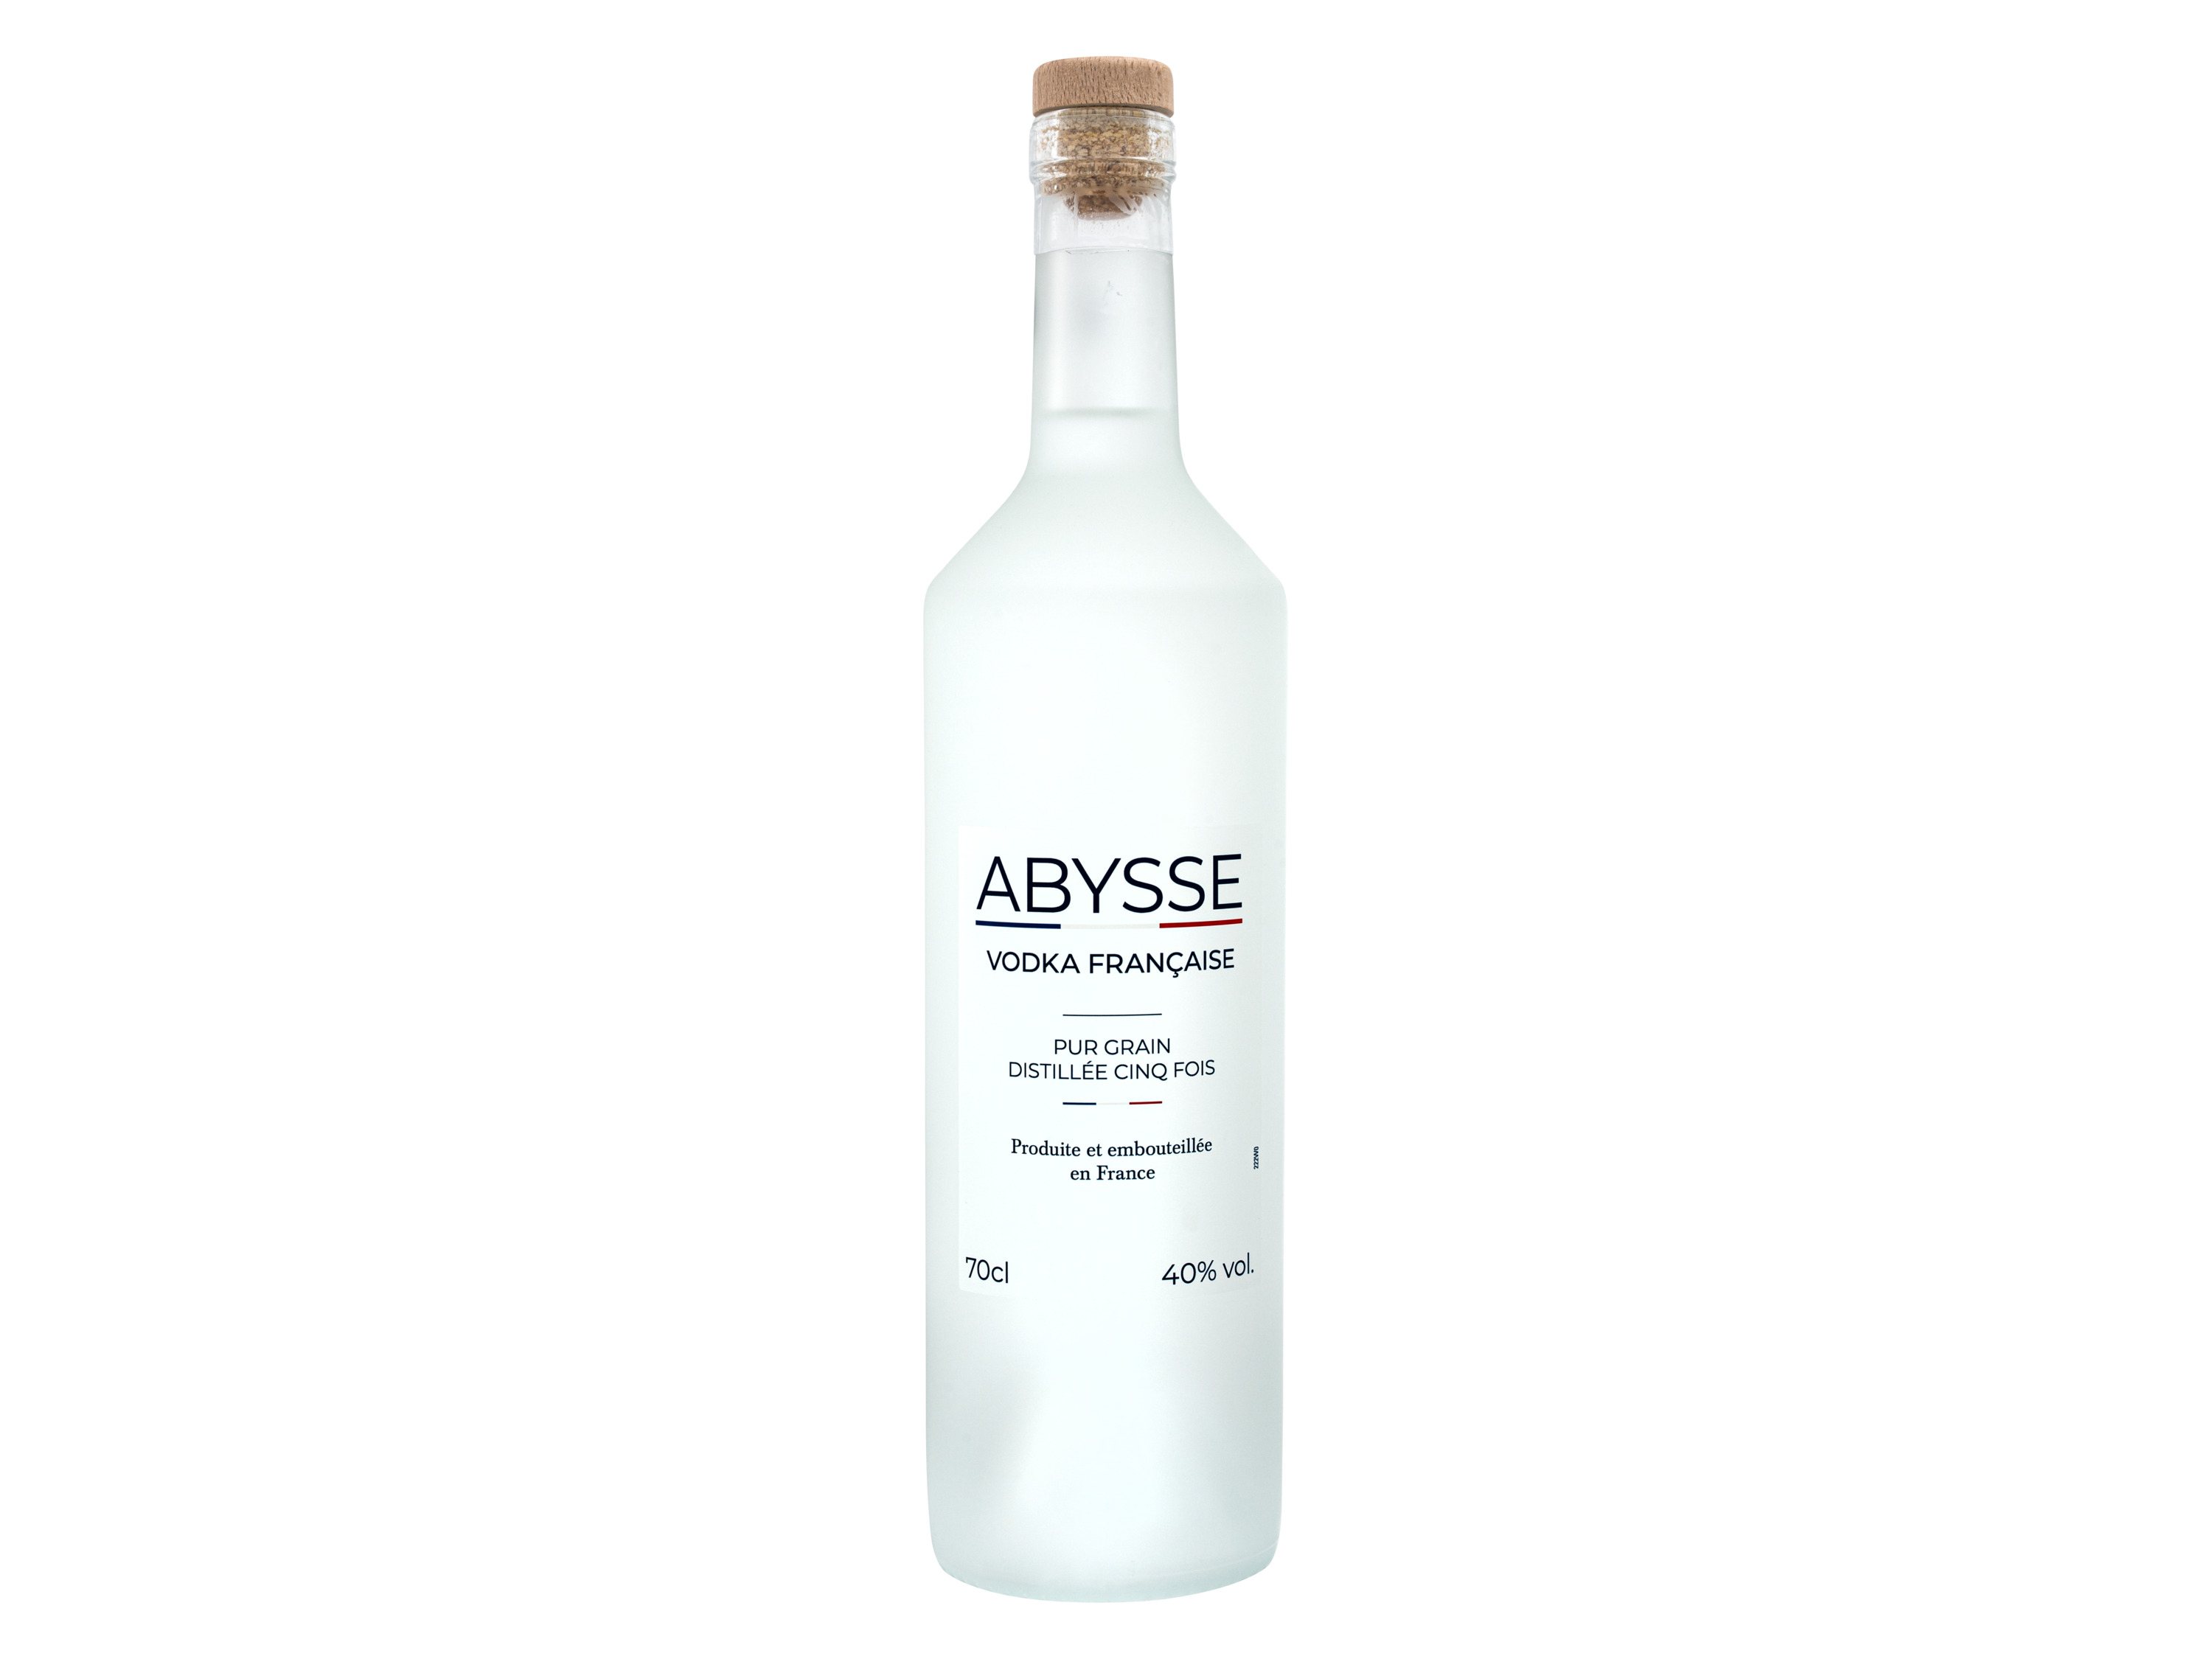 Abysse Französischer Vodka 40% Vol